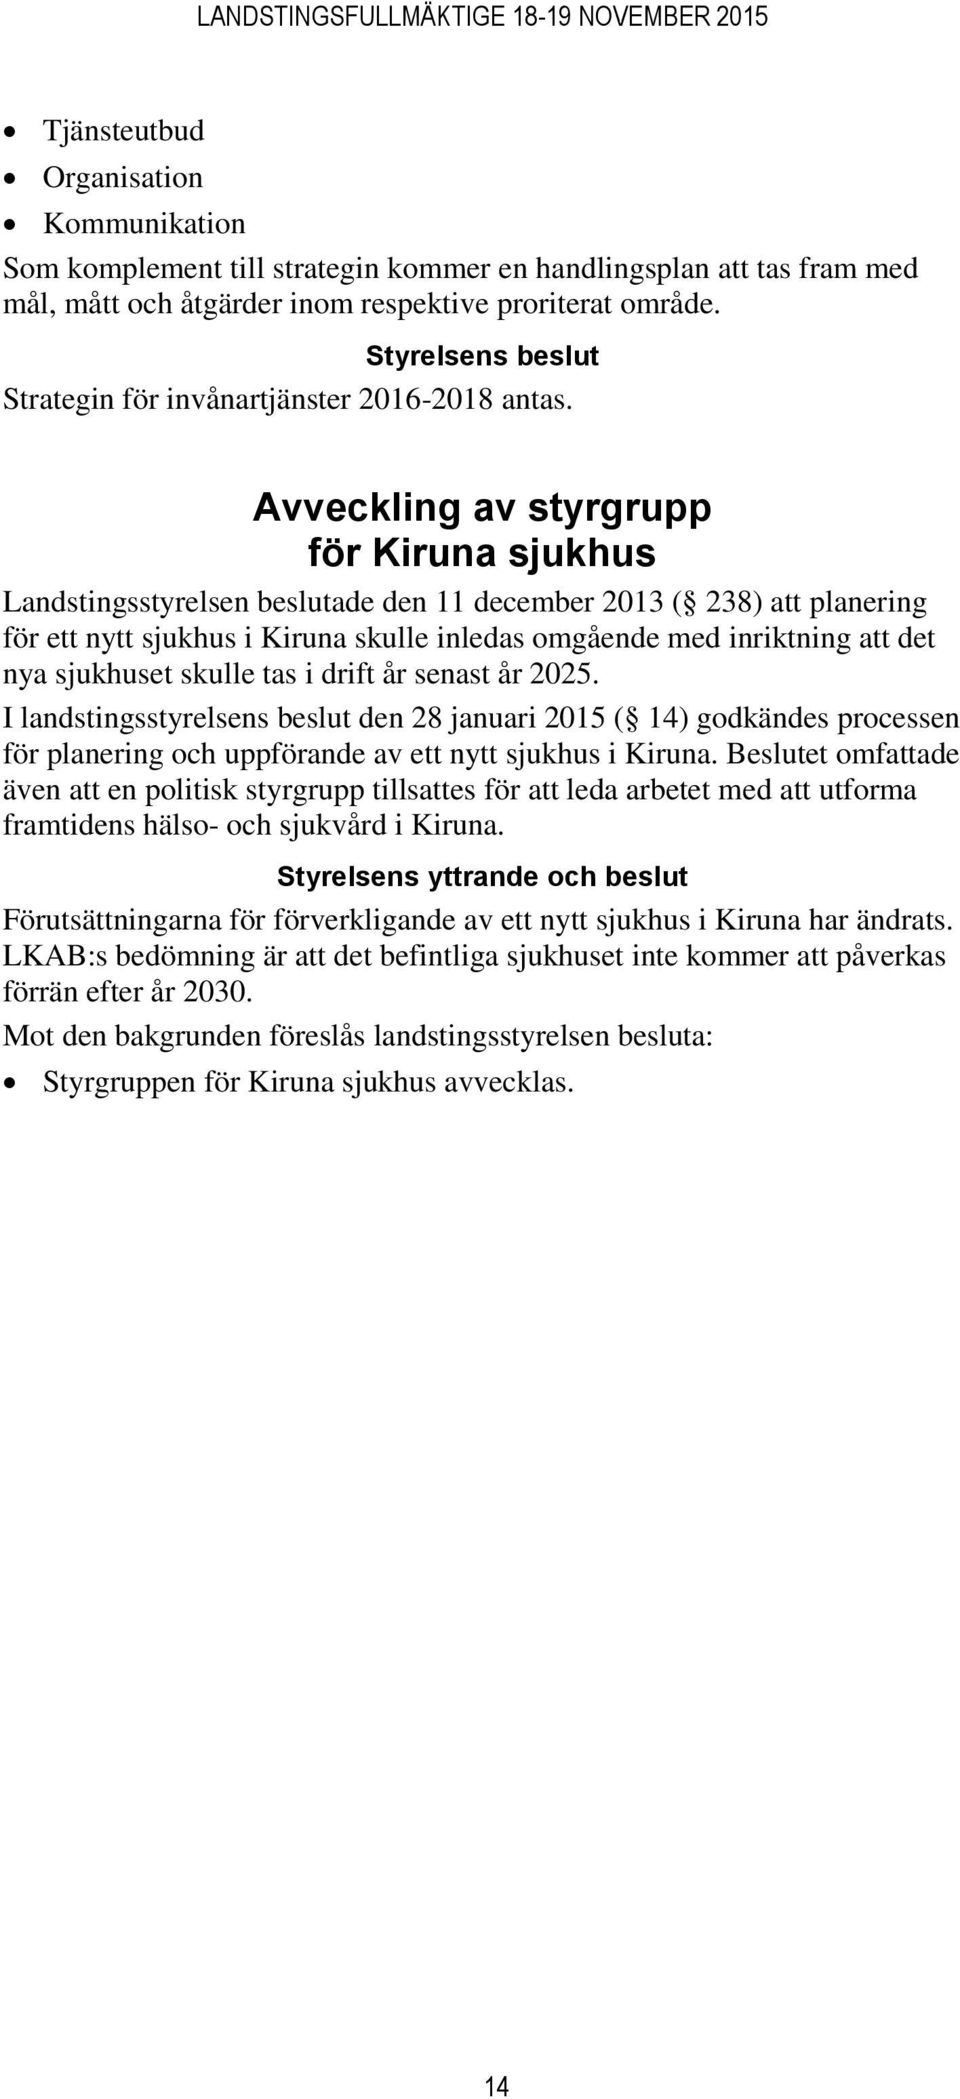 Avveckling av styrgrupp för Kiruna sjukhus Landstingsstyrelsen beslutade den 11 december 2013 ( 238) att planering för ett nytt sjukhus i Kiruna skulle inledas omgående med inriktning att det nya